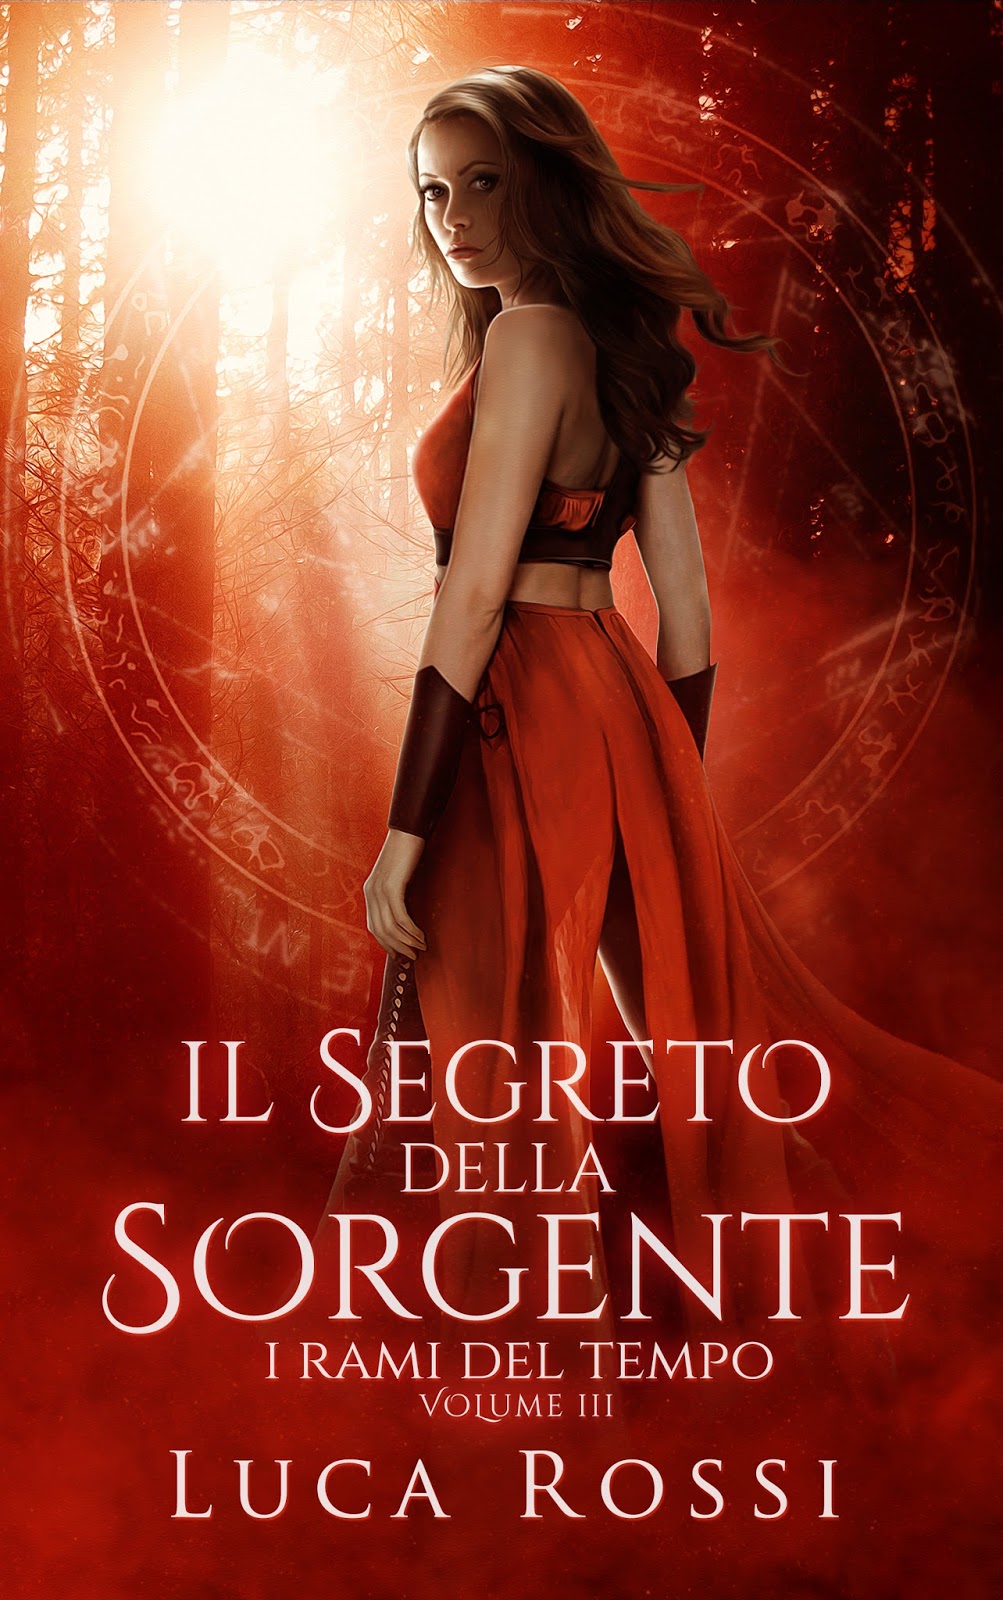 Luca Rossi - Il Segreto Sorgente - Cover